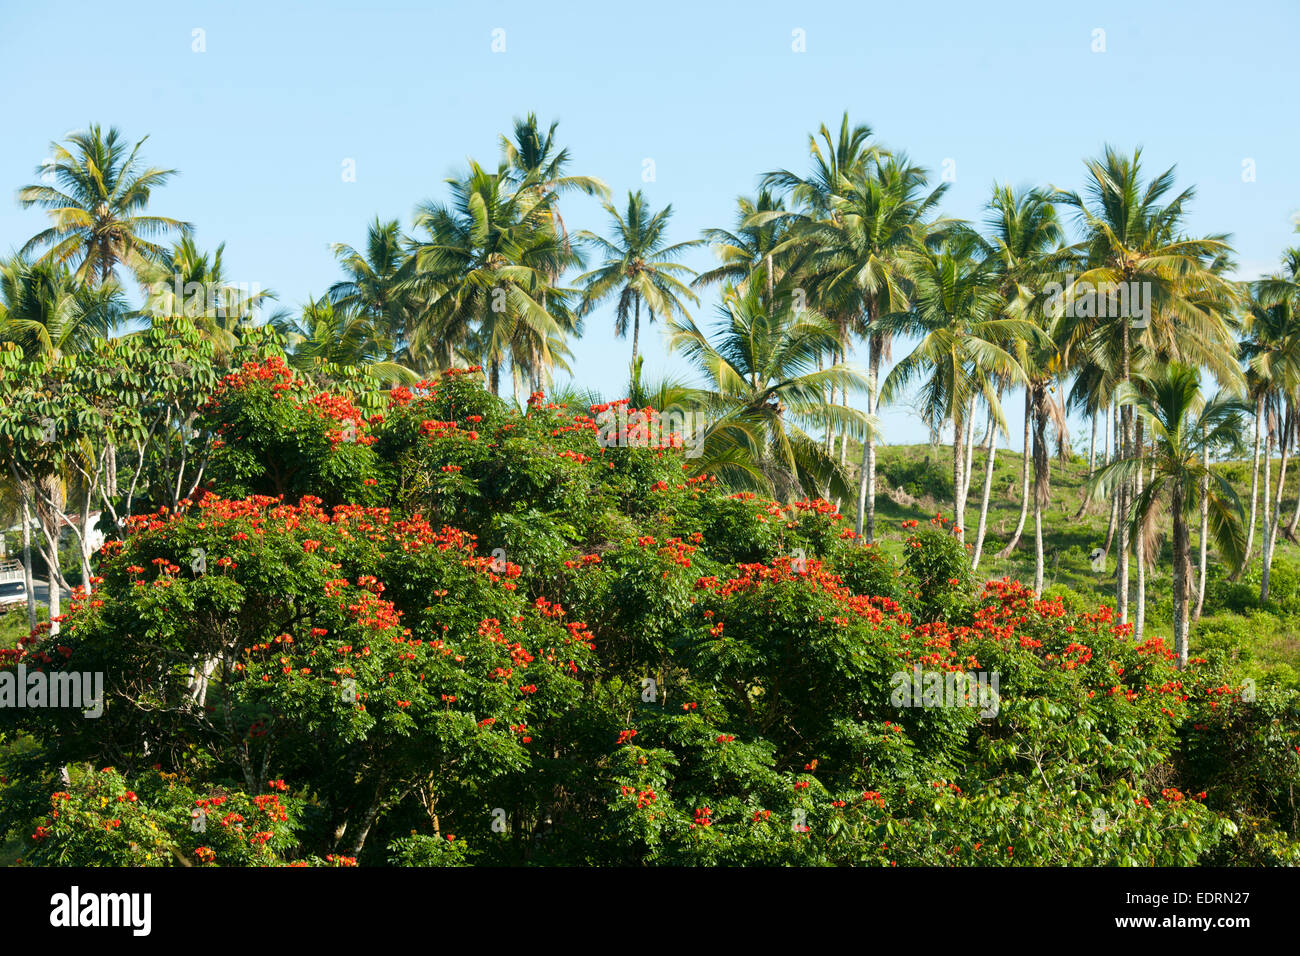 Dominikanische Republik, Halbinsel Samana, Las Terrenas, am Boulevard Turistico del Atlantico an der Nordküste bei Las Terrenas Stock Photo